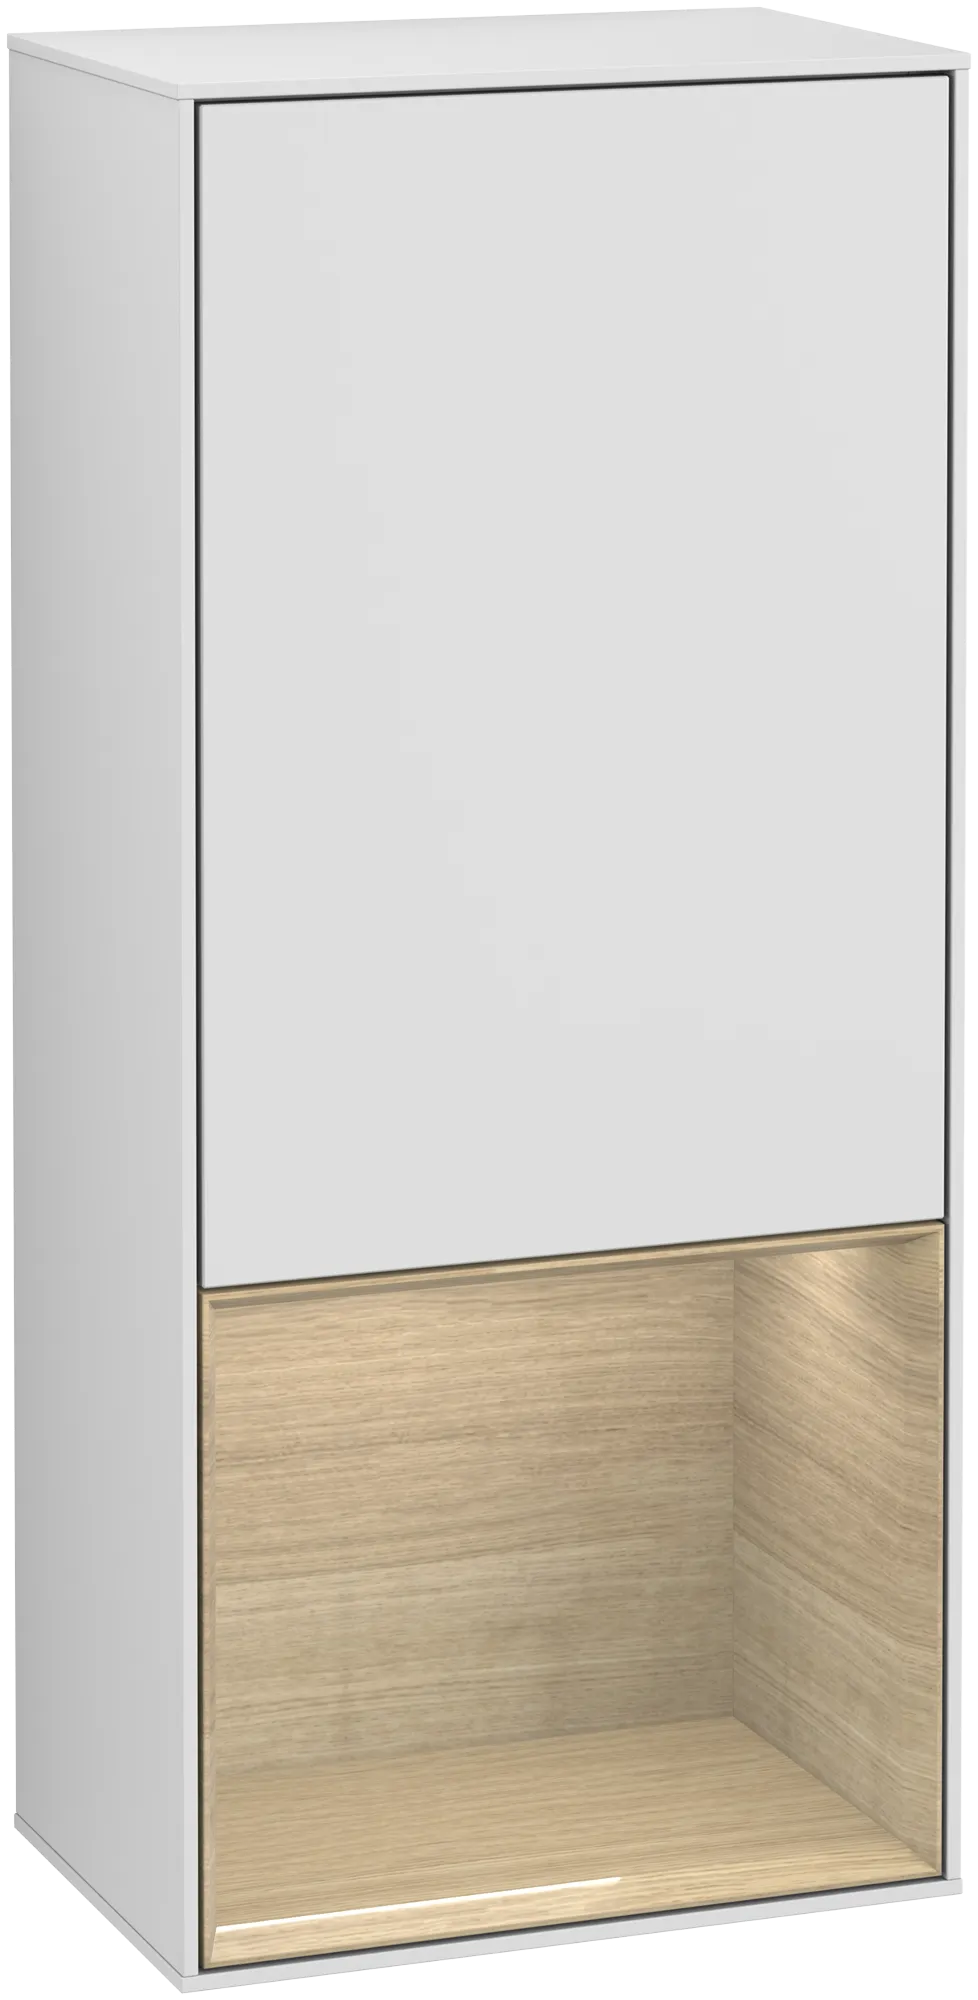 Bild von VILLEROY BOCH Finion Seitenschrank, mit Beleuchtung, 1 Tür, 418 x 936 x 270 mm, White Matt Lacquer / Oak Veneer #G540PCMT